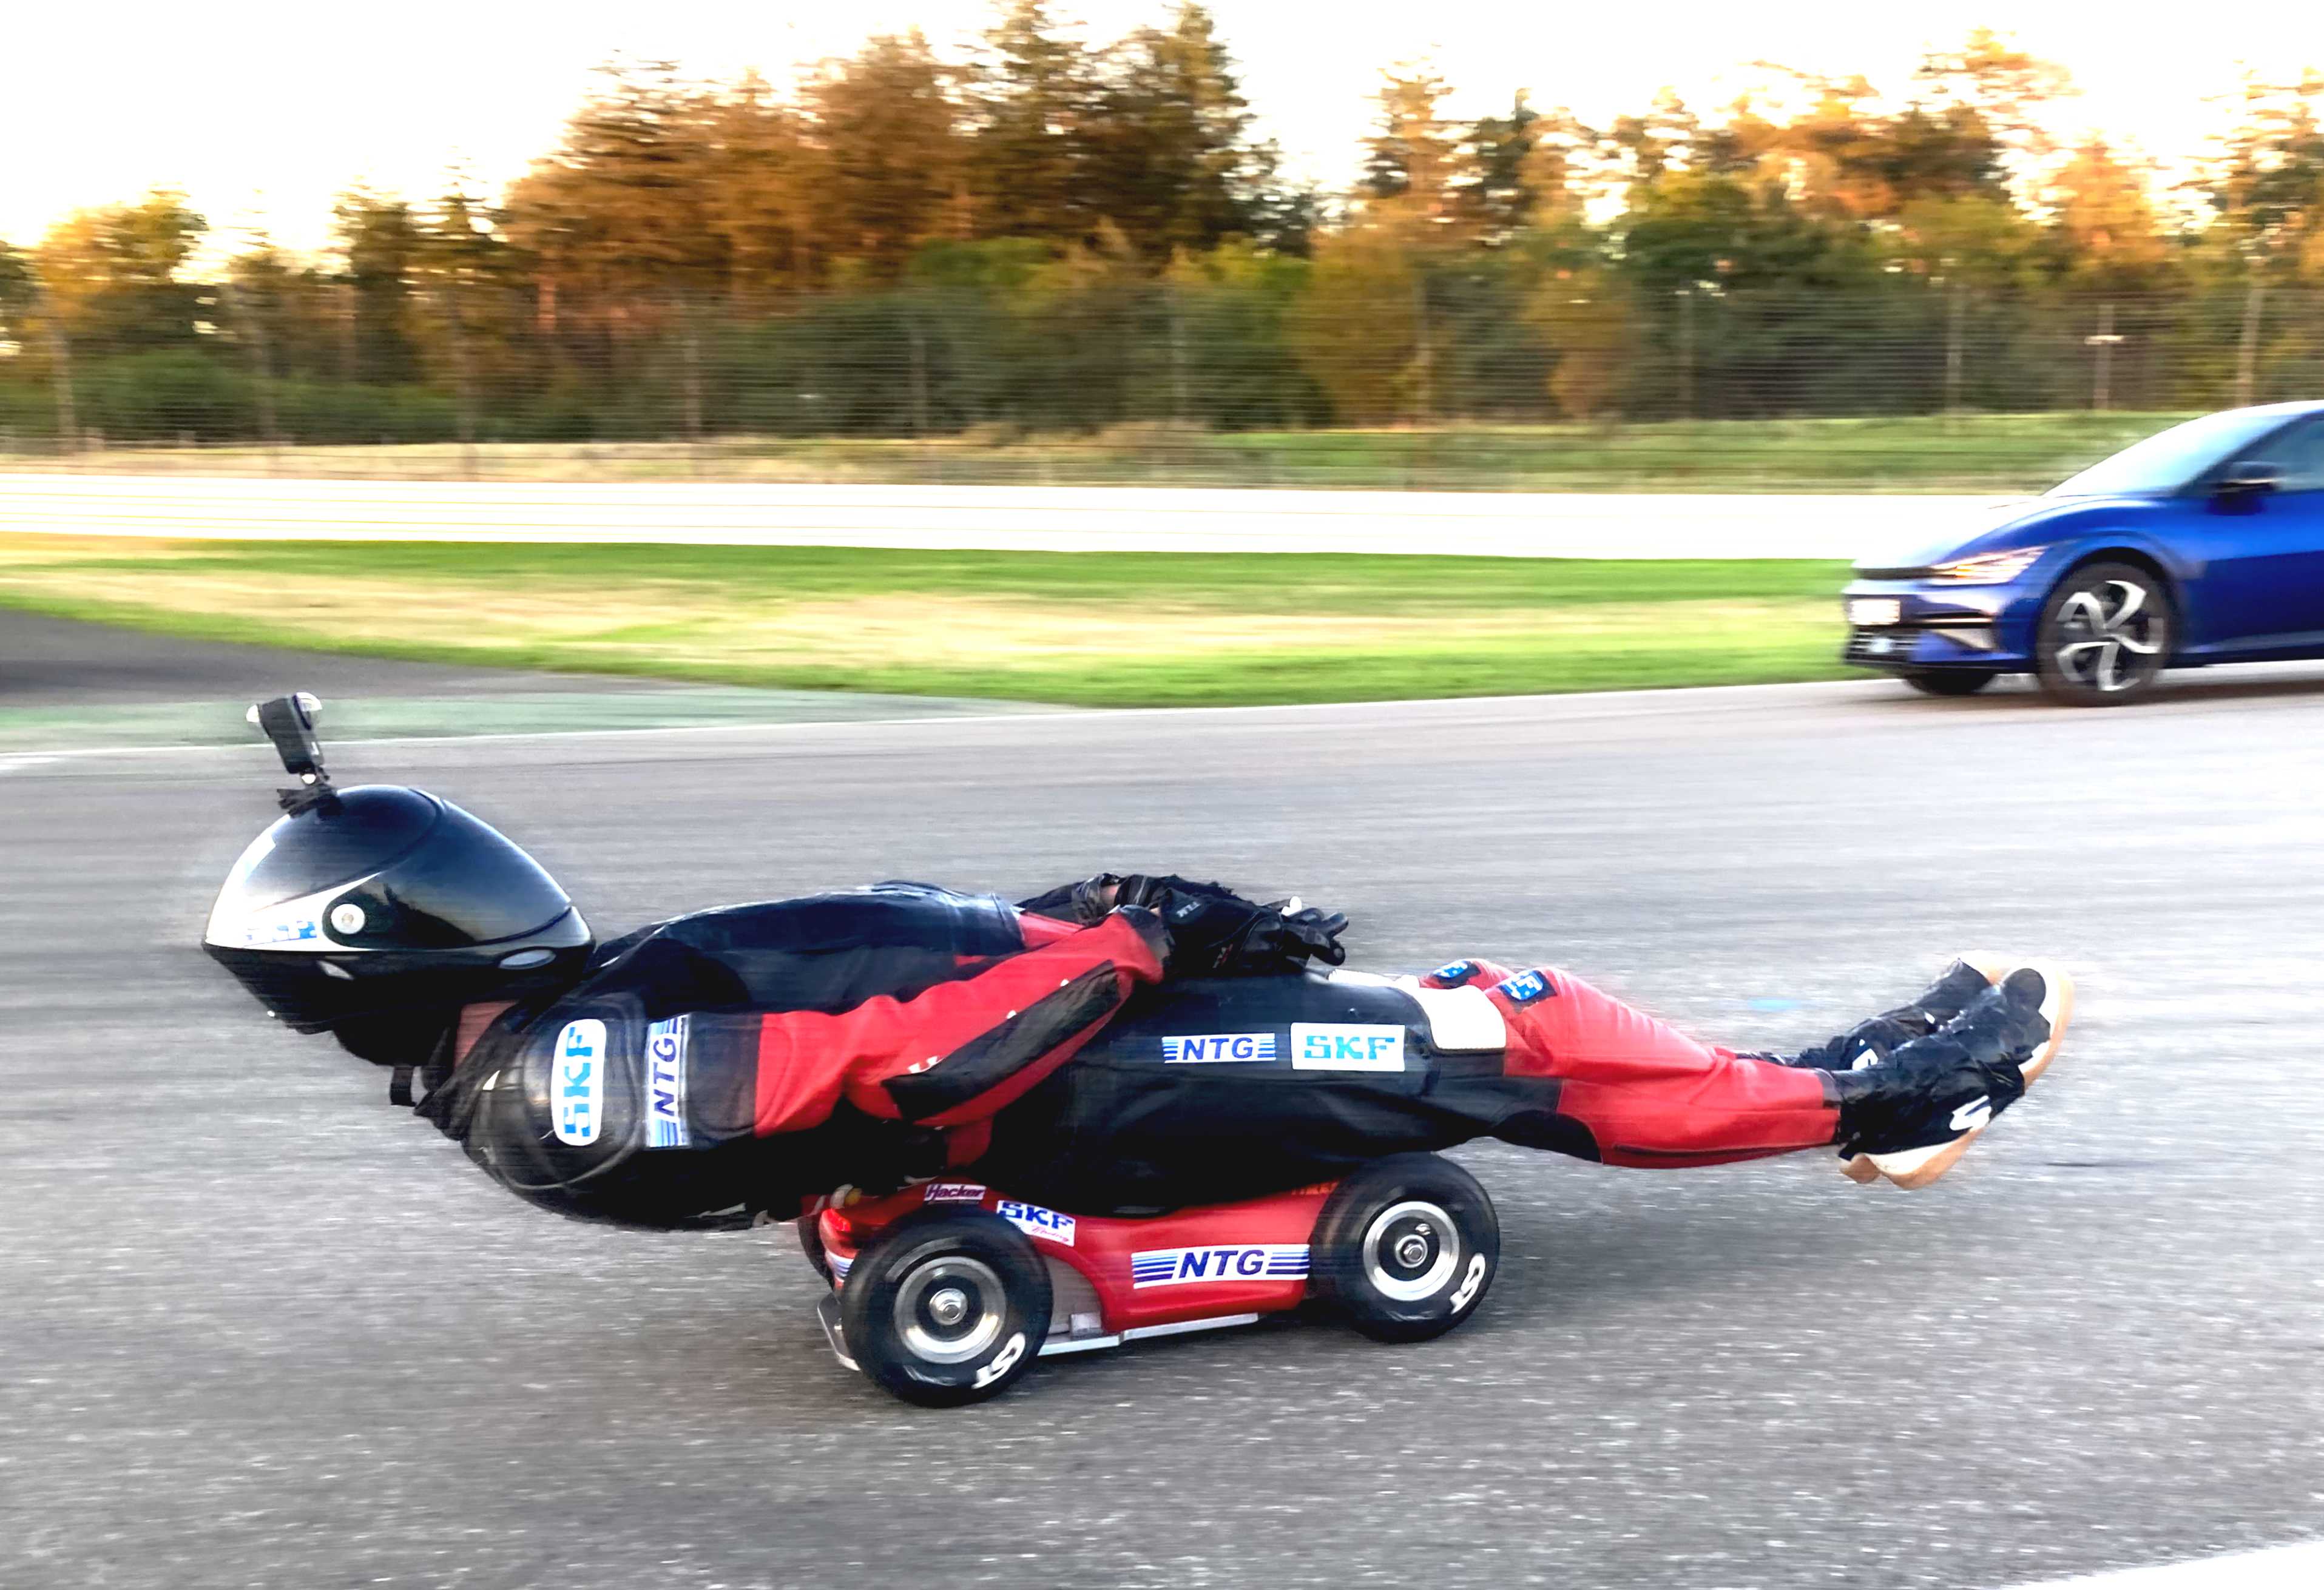 Bobby-Car-Pilot verbessert Geschwindigkeits-Weltrekord